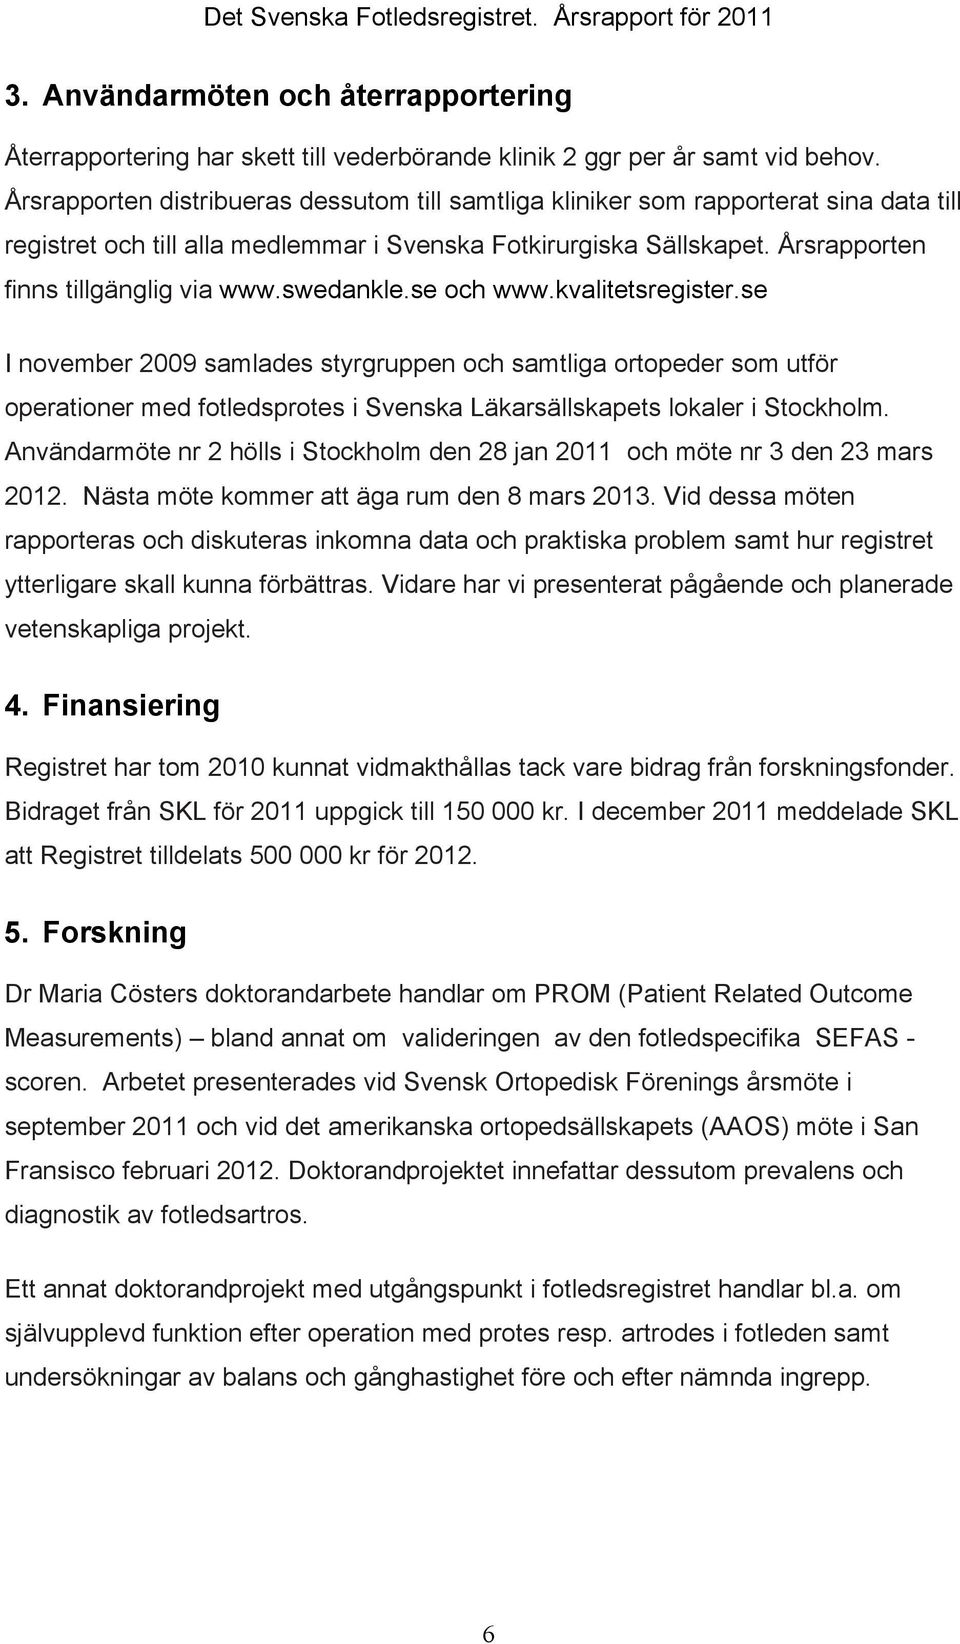 swedankle.se och www.kvalitetsregister.se I november 2009 samlades styrgruppen och samtliga ortopeder som utför operationer med fotledsprotes i Svenska Läkarsällskapets lokaler i Stockholm.